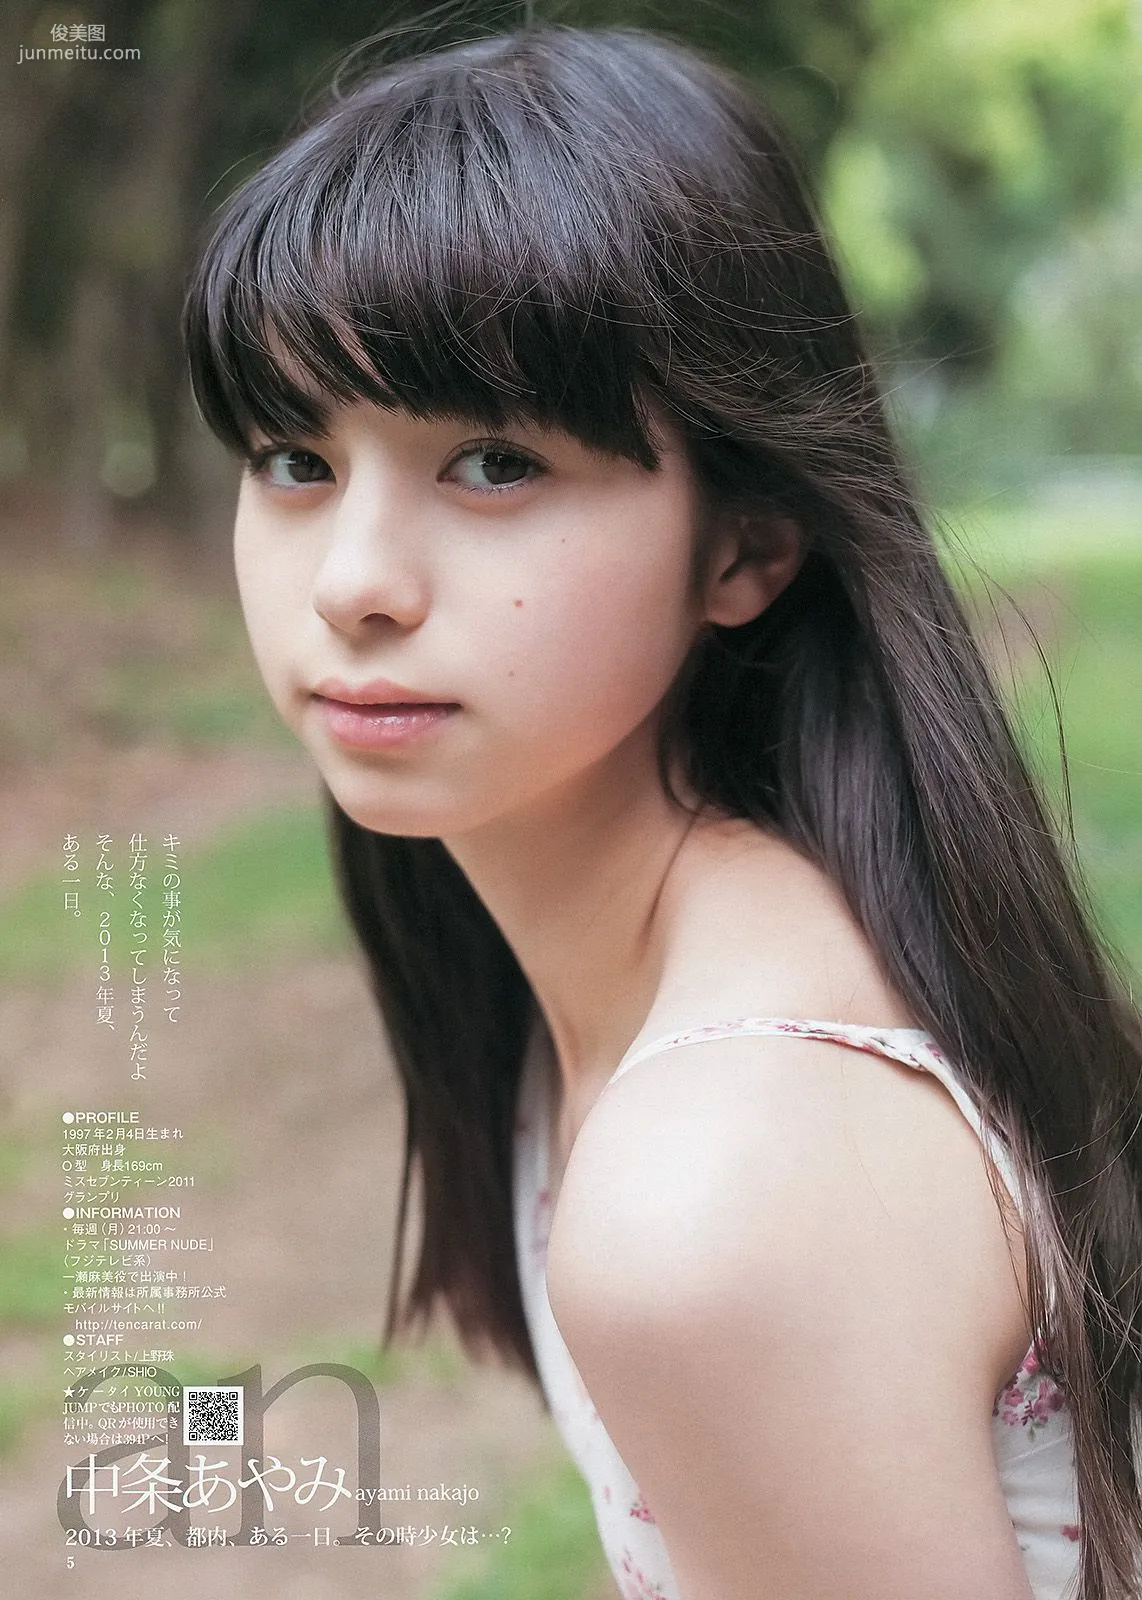 篠田麻里子 アオハルガールズ 中条あやみ [Weekly Young Jump] 2013年No.36-37 写真杂志19